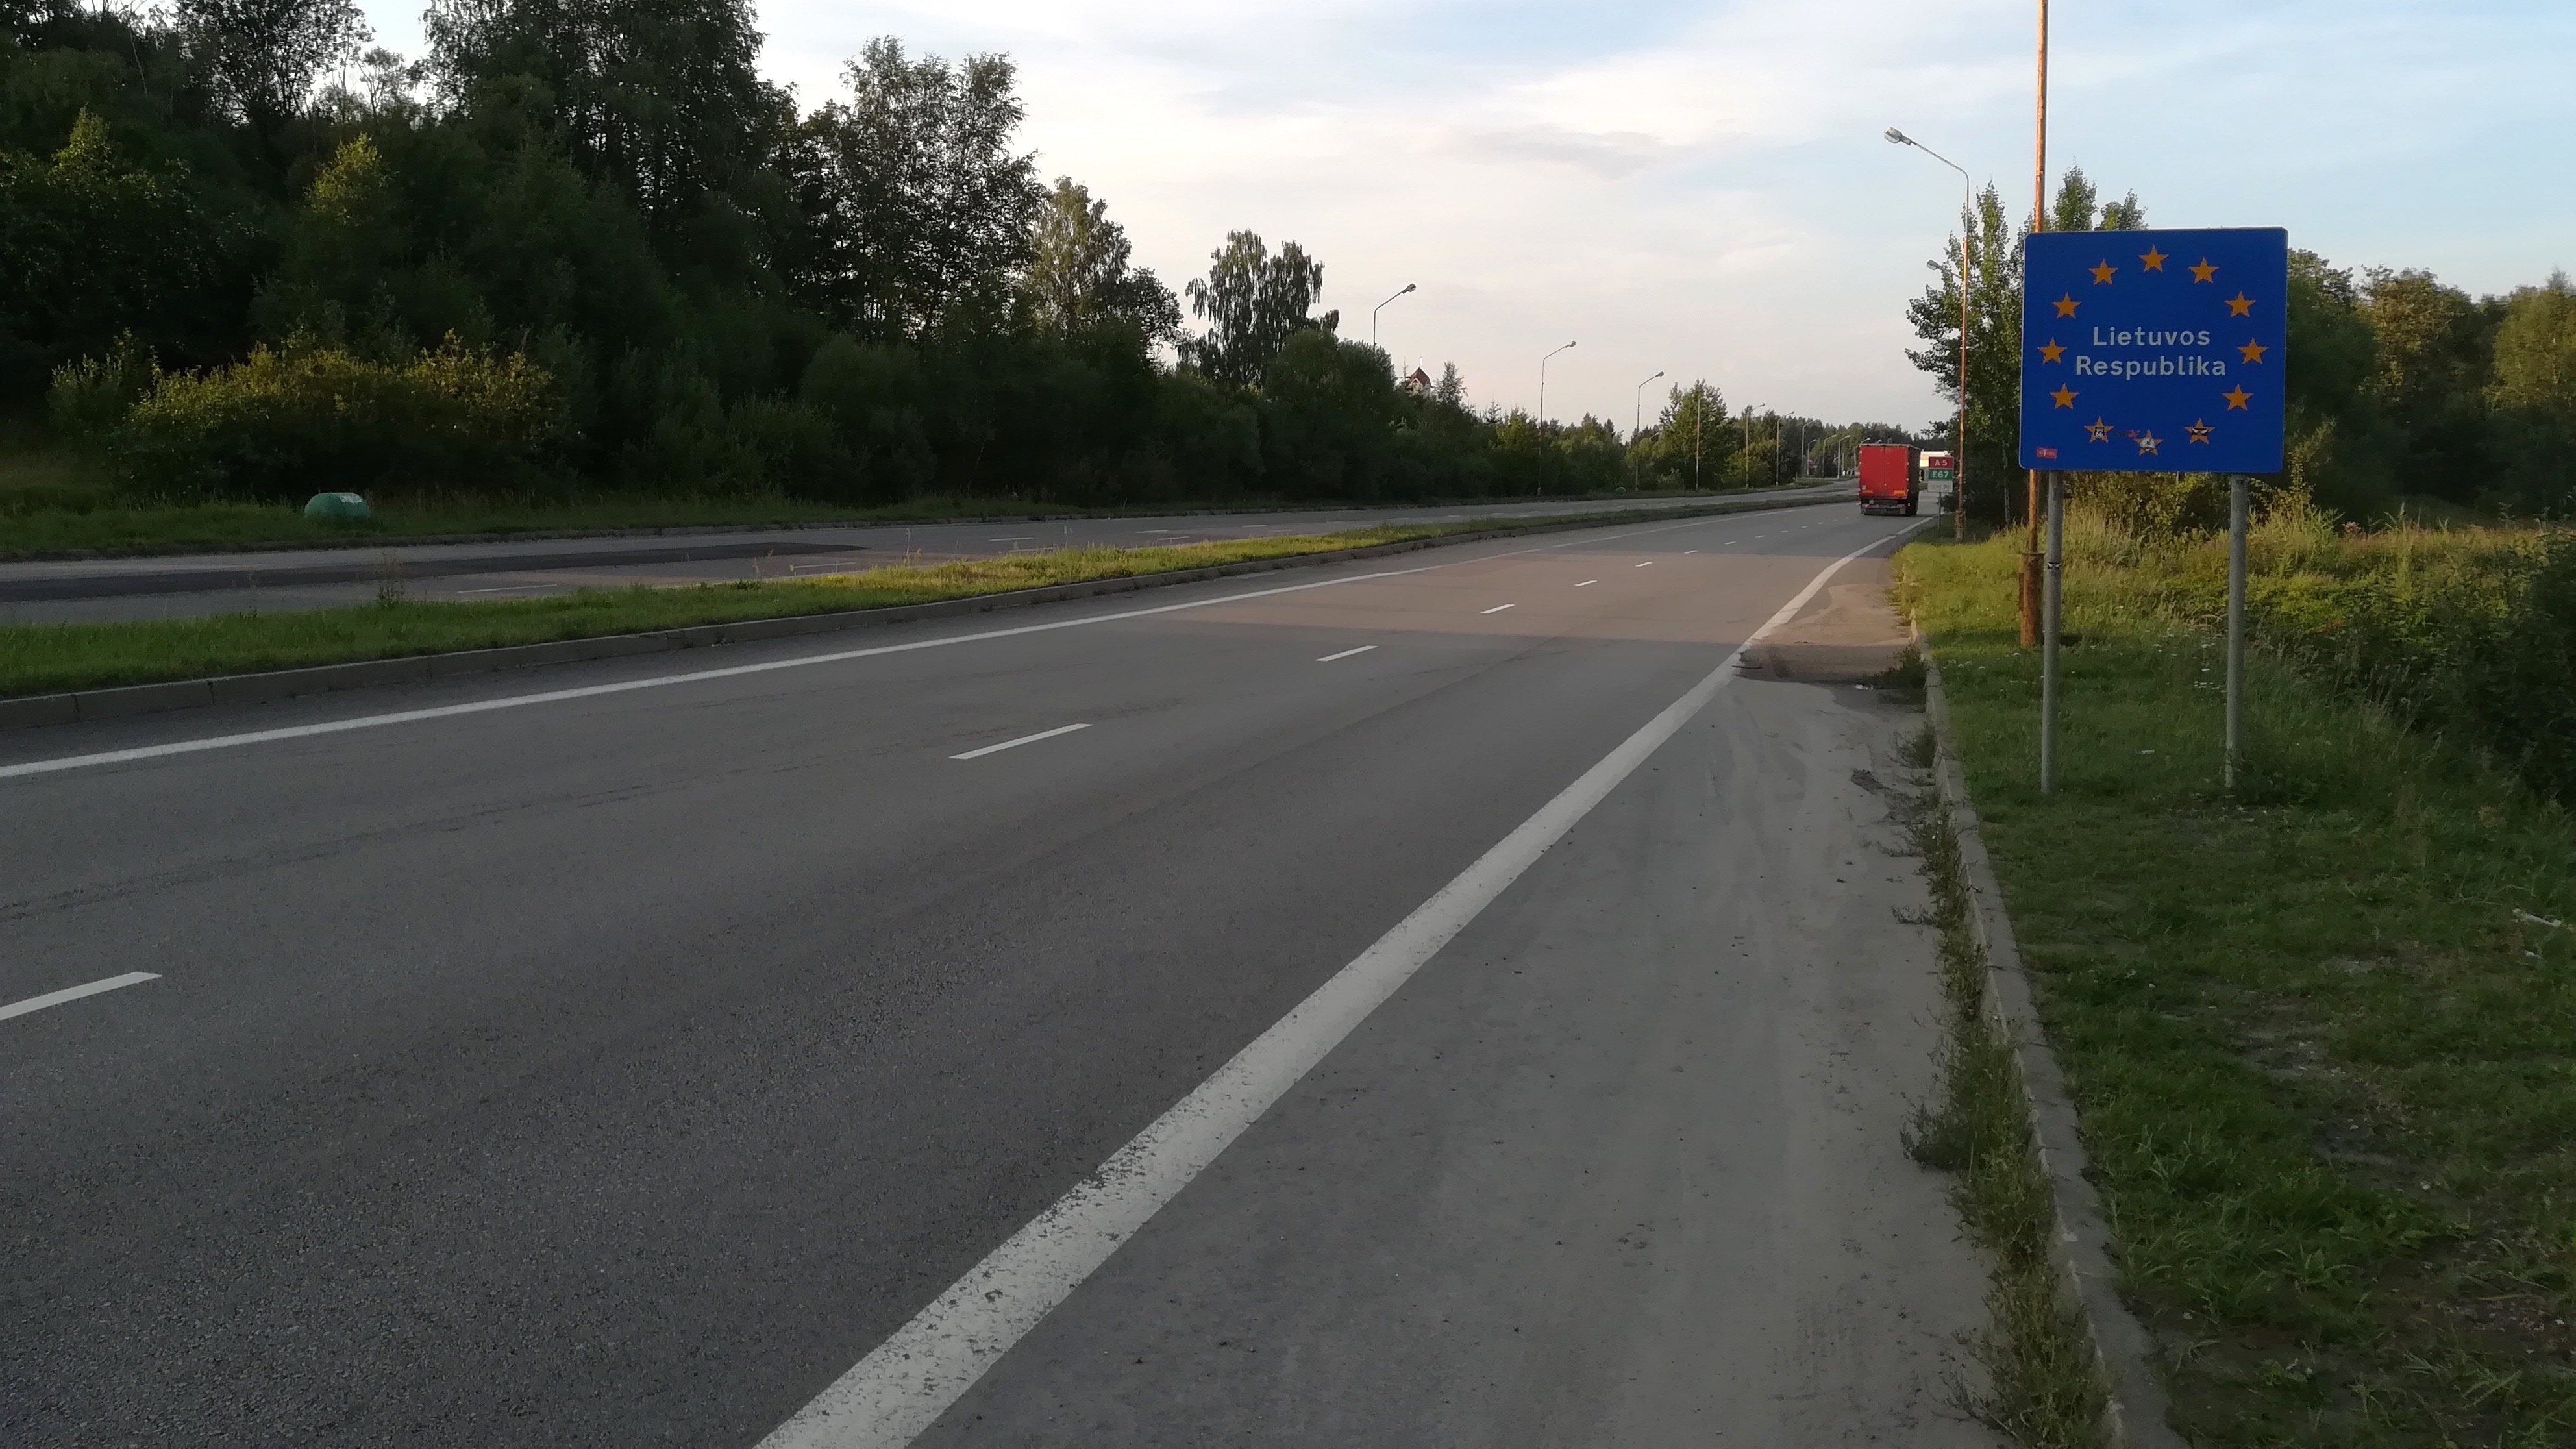 Droga krajowa łącząca Polskę z Litwę w rejonie dawnego przejścia granicznego w Budzisku. Rafał Lesiecki / Defence24.pl